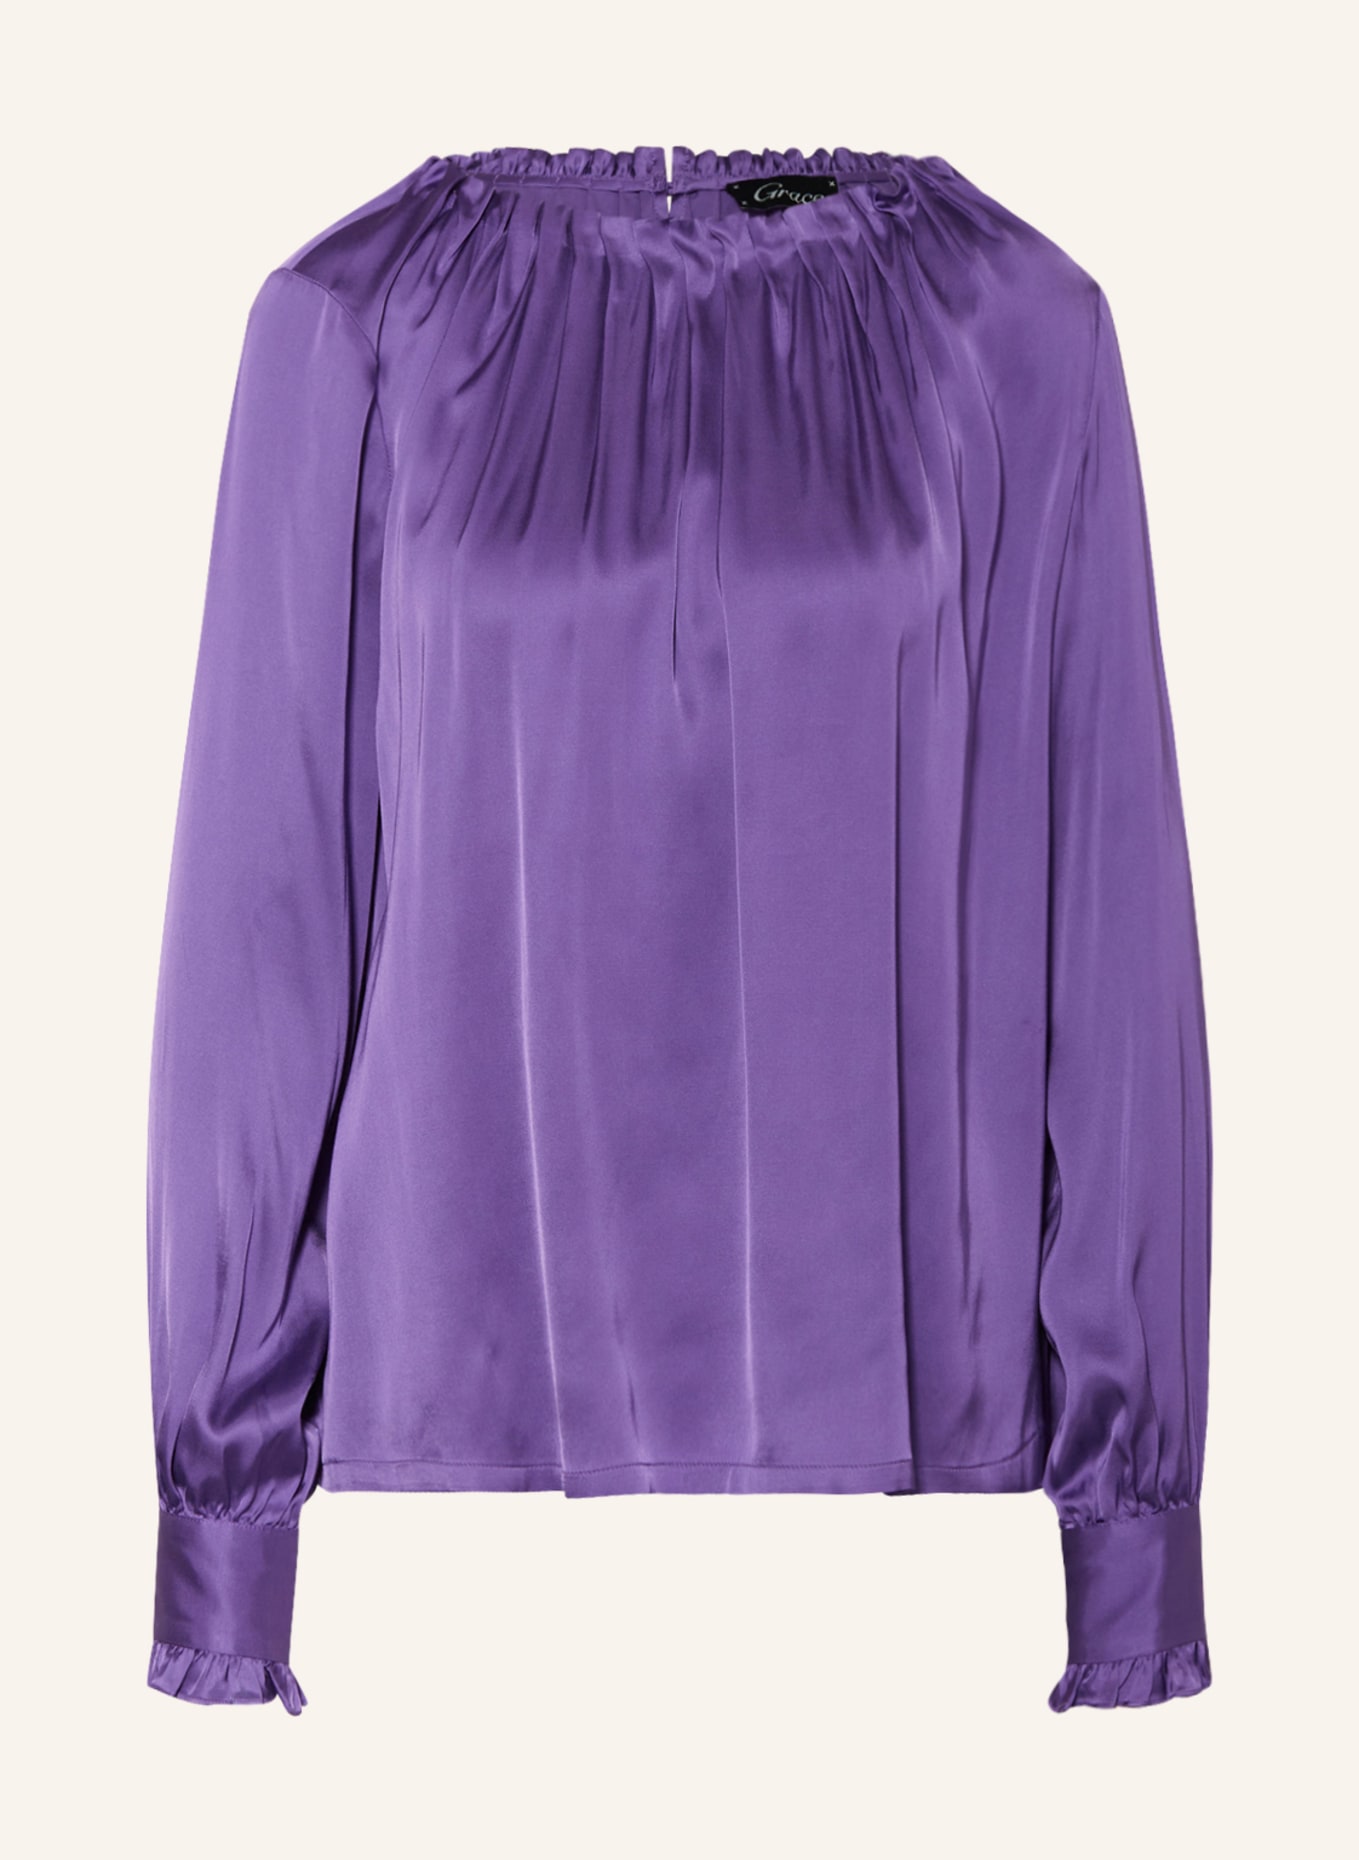 Grace Shirt blouse in satin, Color: PURPLE (Image 1)